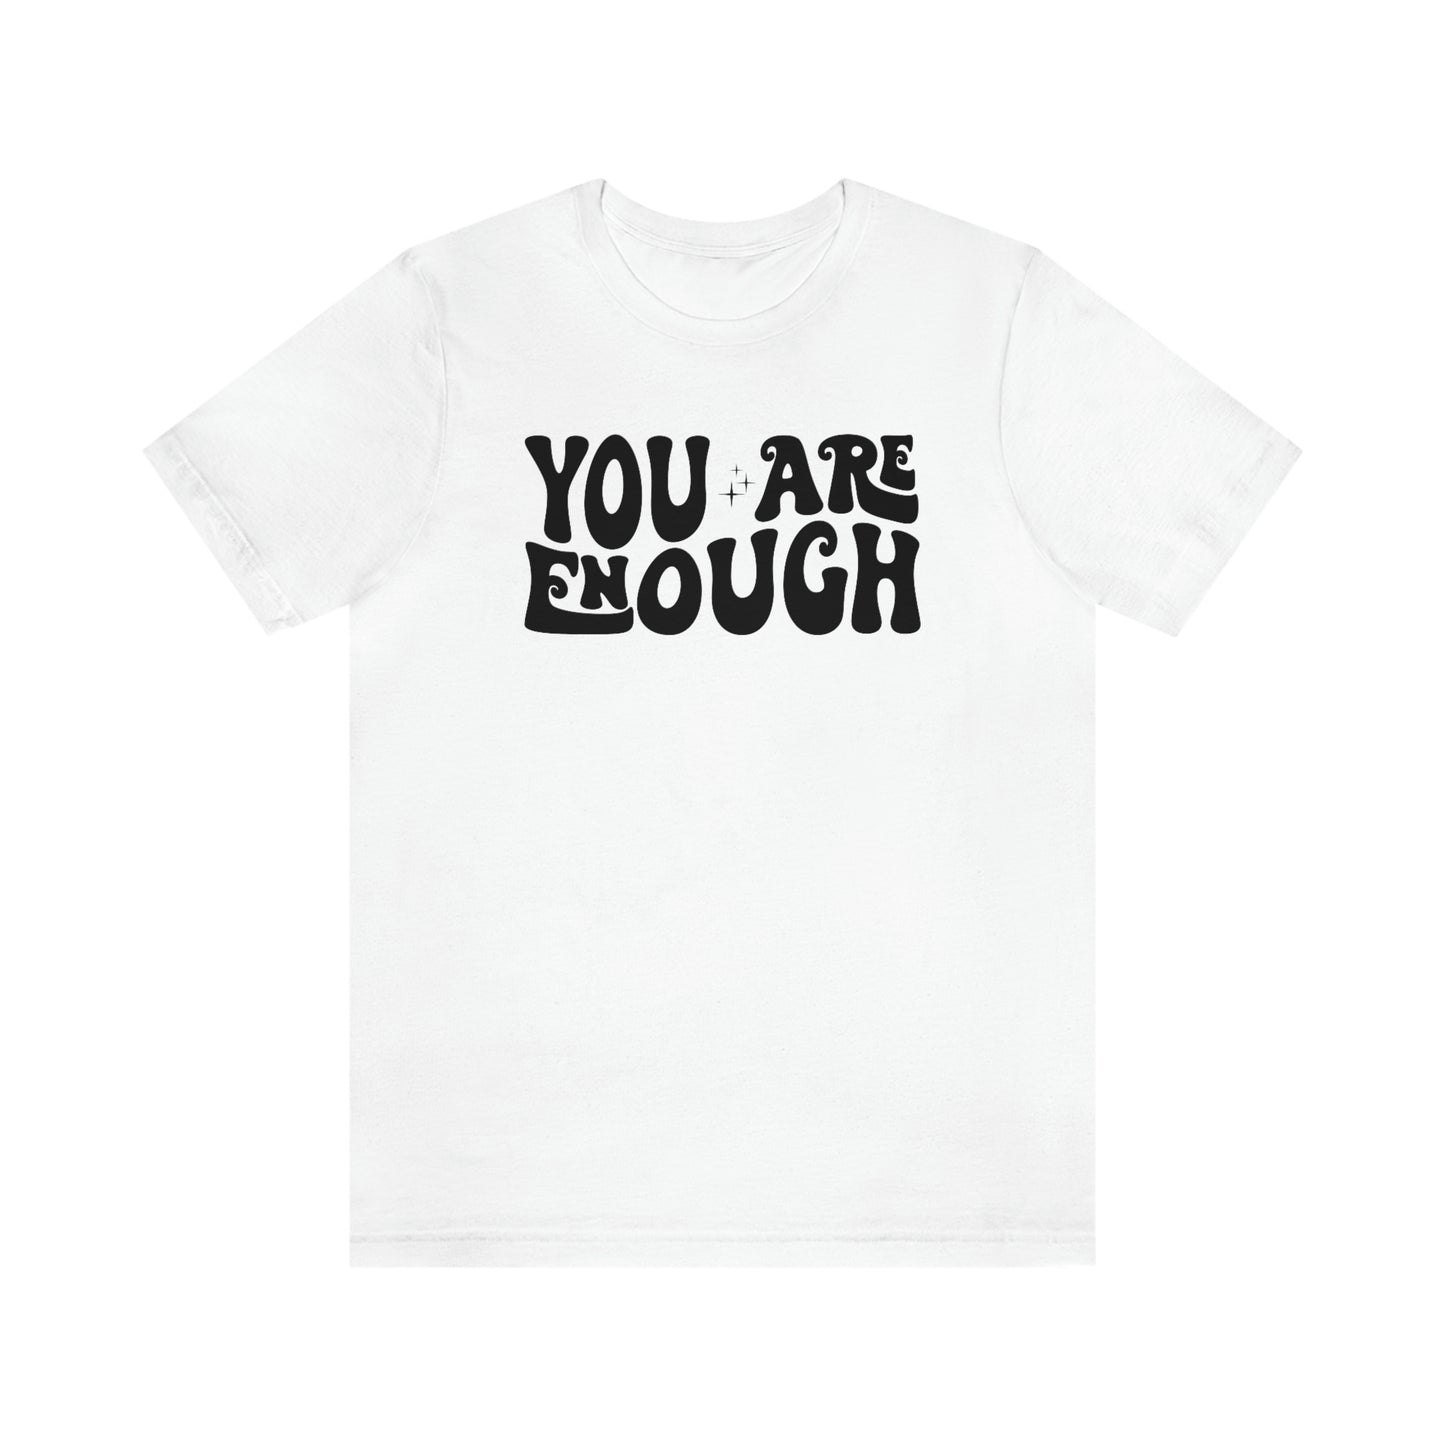 You Are Enough Retro T-Shirt